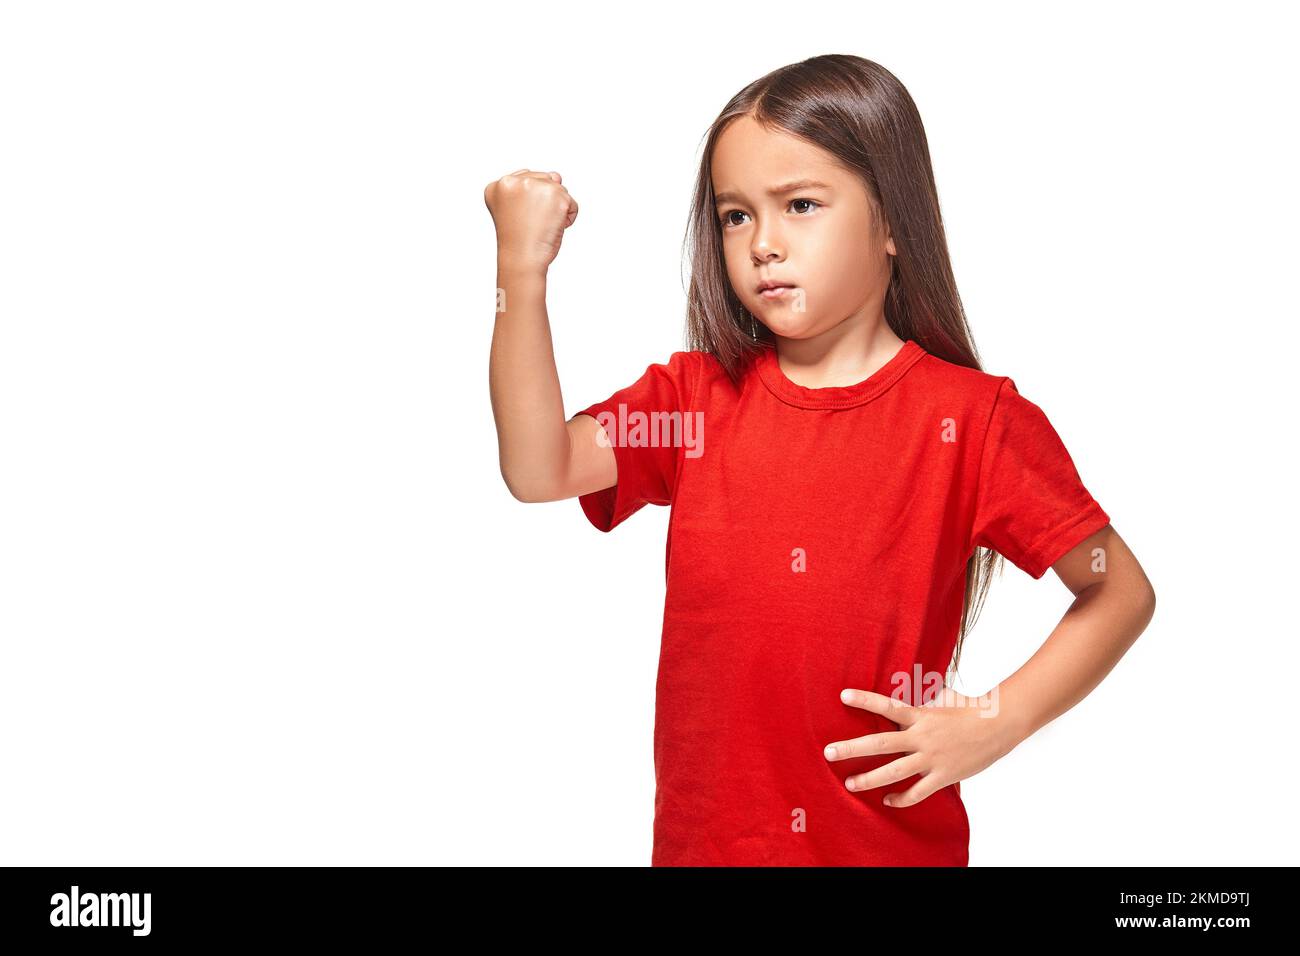 Hermosa niña en camiseta roja sacude su puño Fotografía de stock -